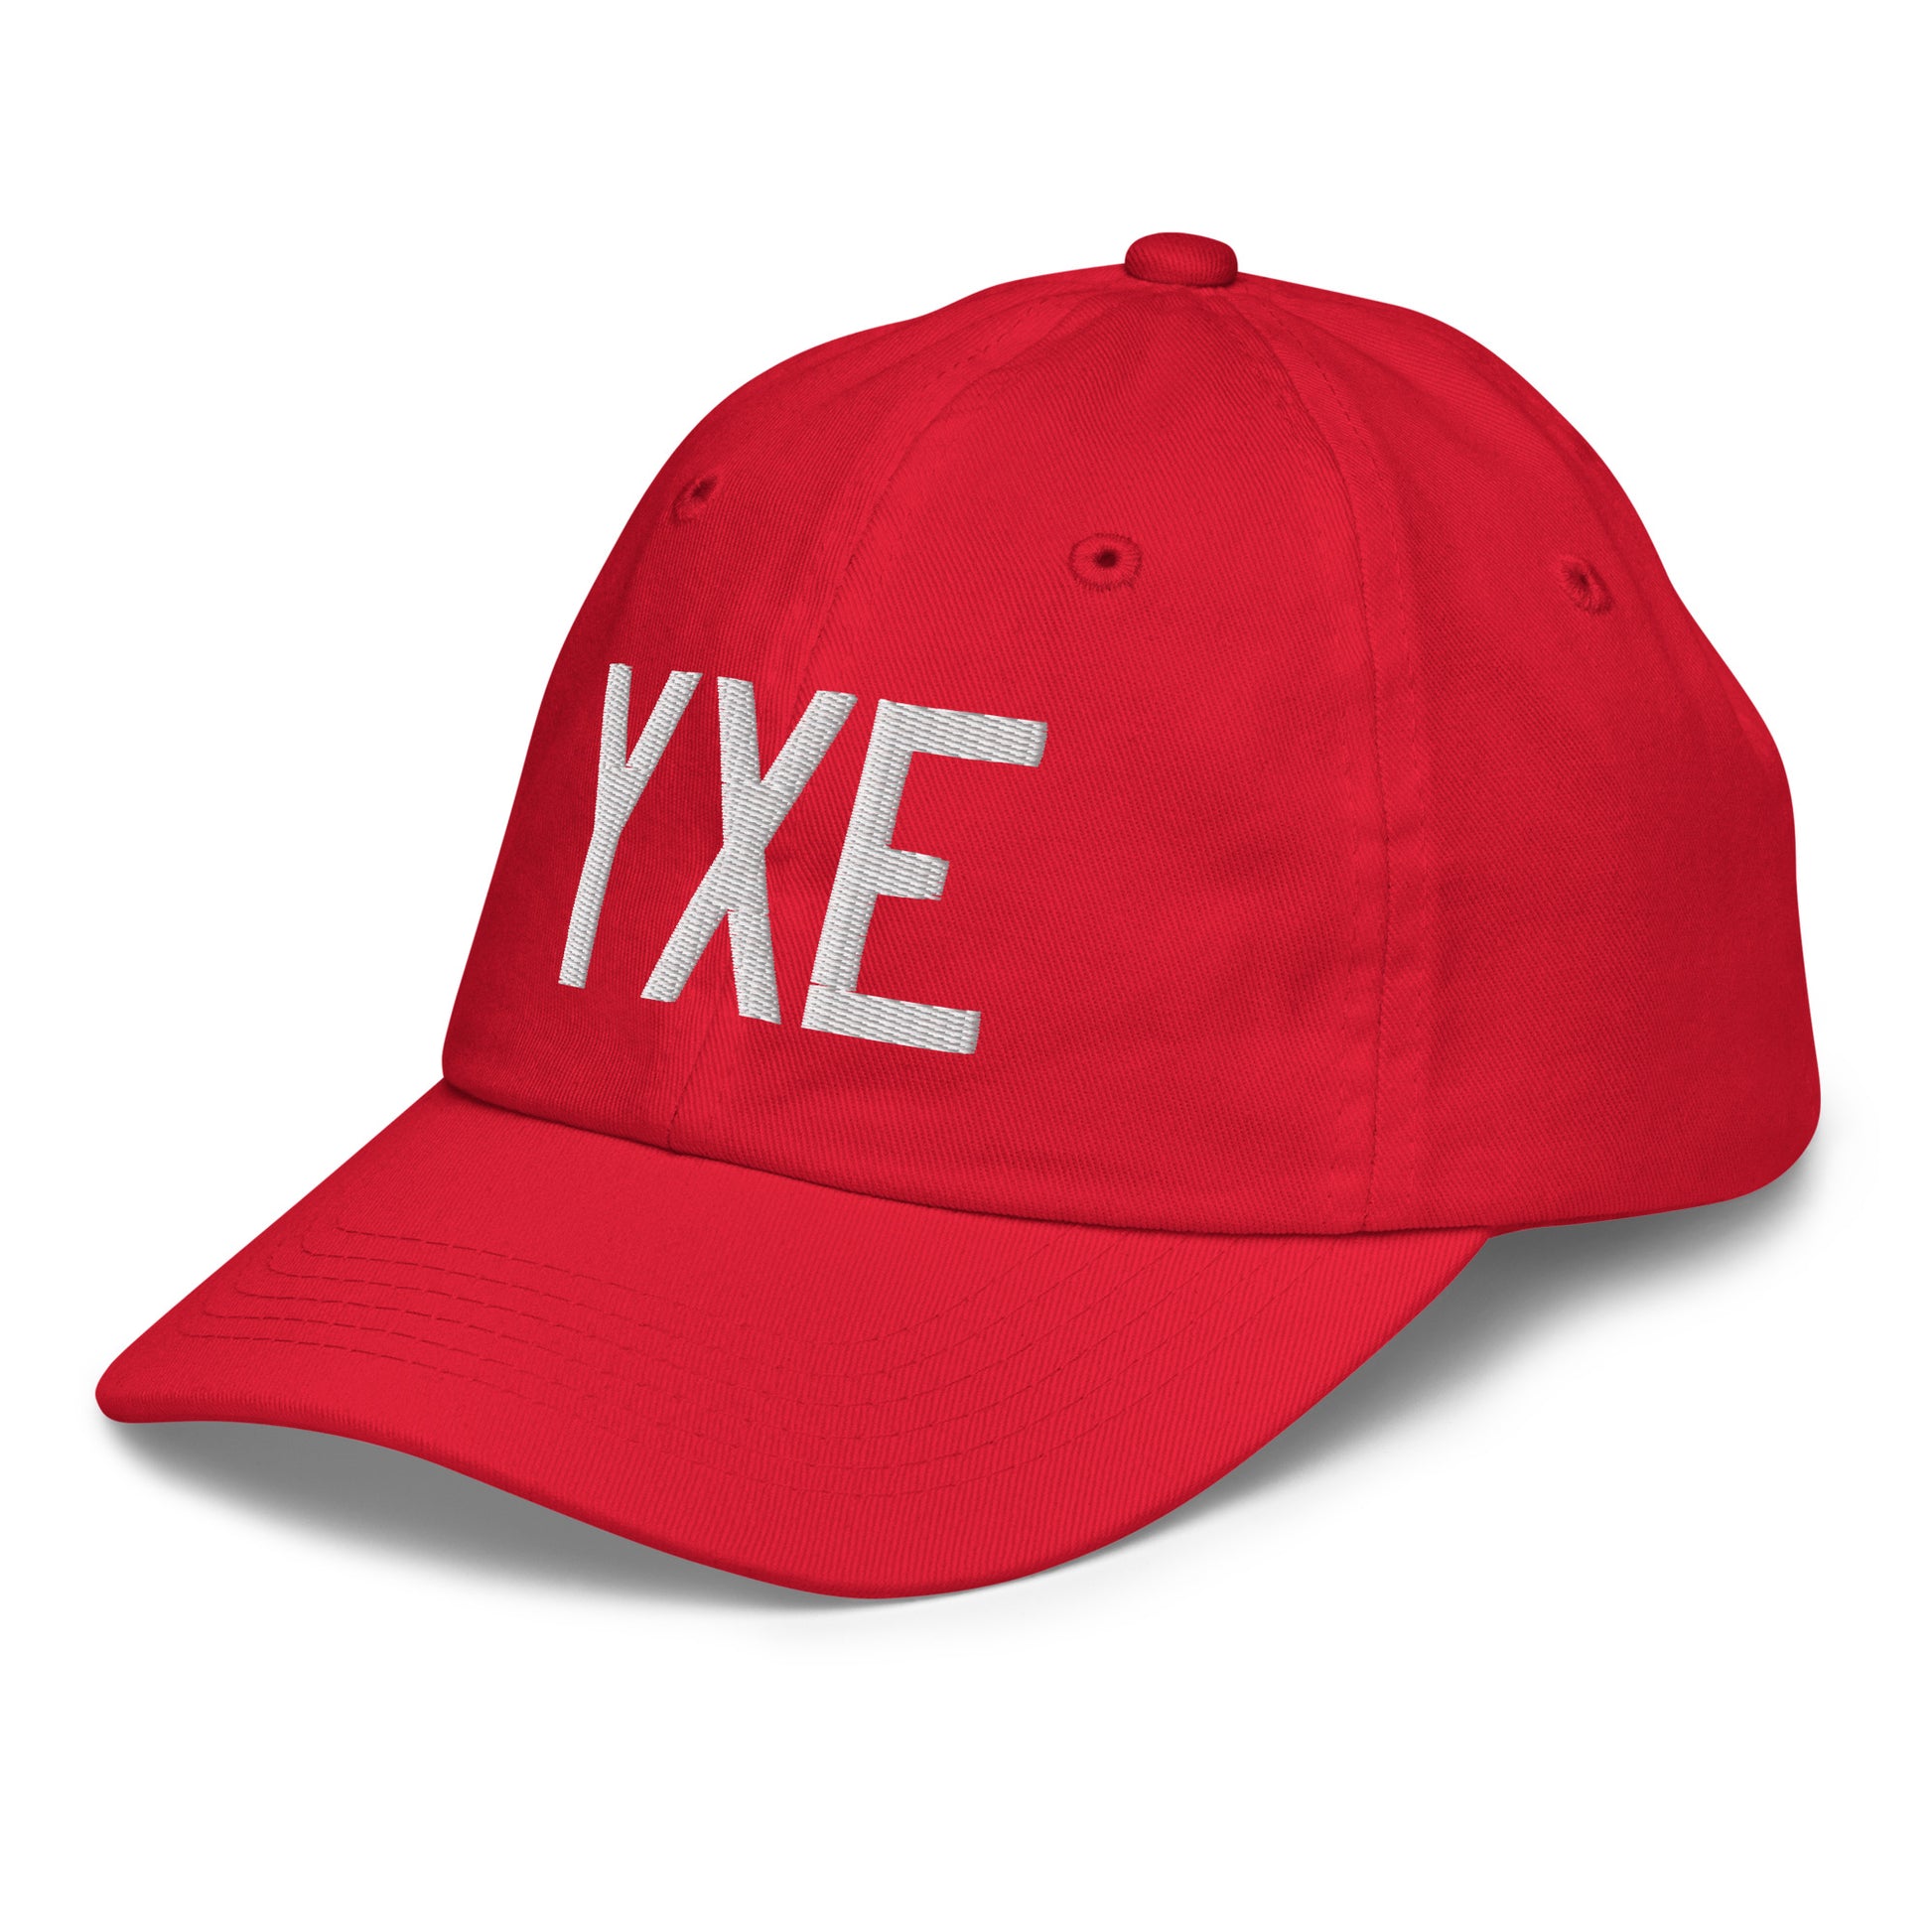 Airport Code Kid's Baseball Cap - White • YXE Saskatoon • YHM Designs - Image 19